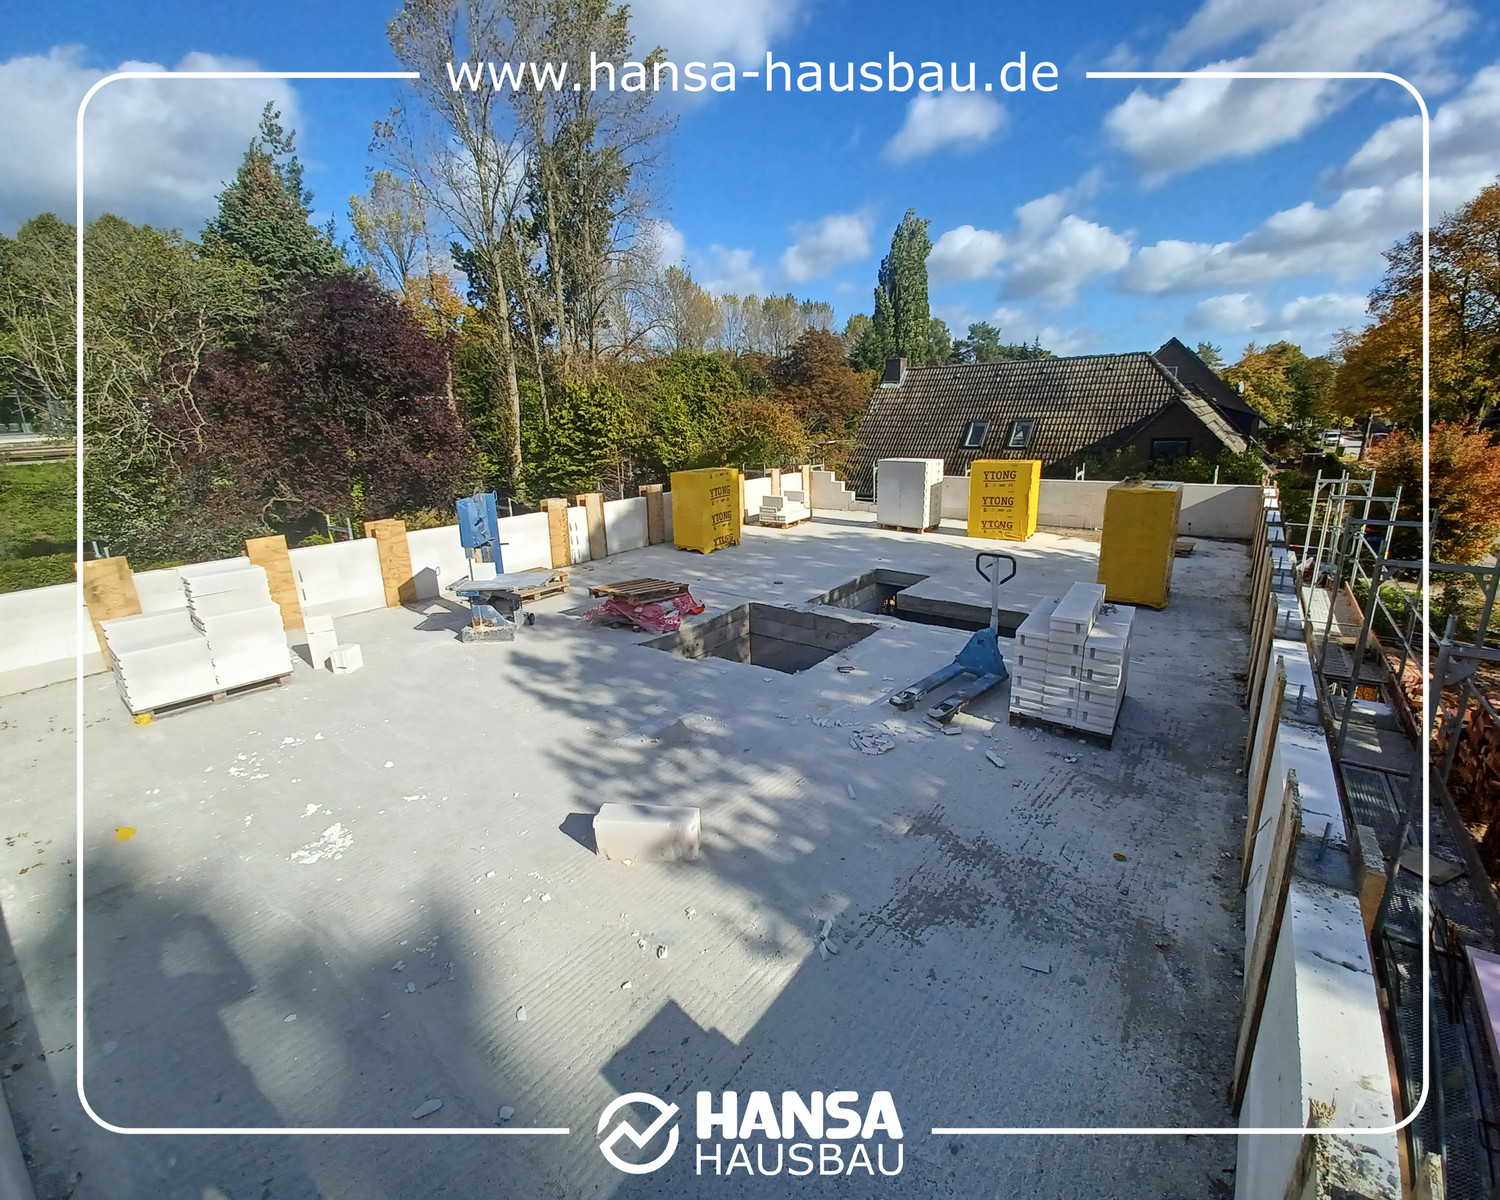 Hansa Hausbau Drempel Neubau Hanburg 06